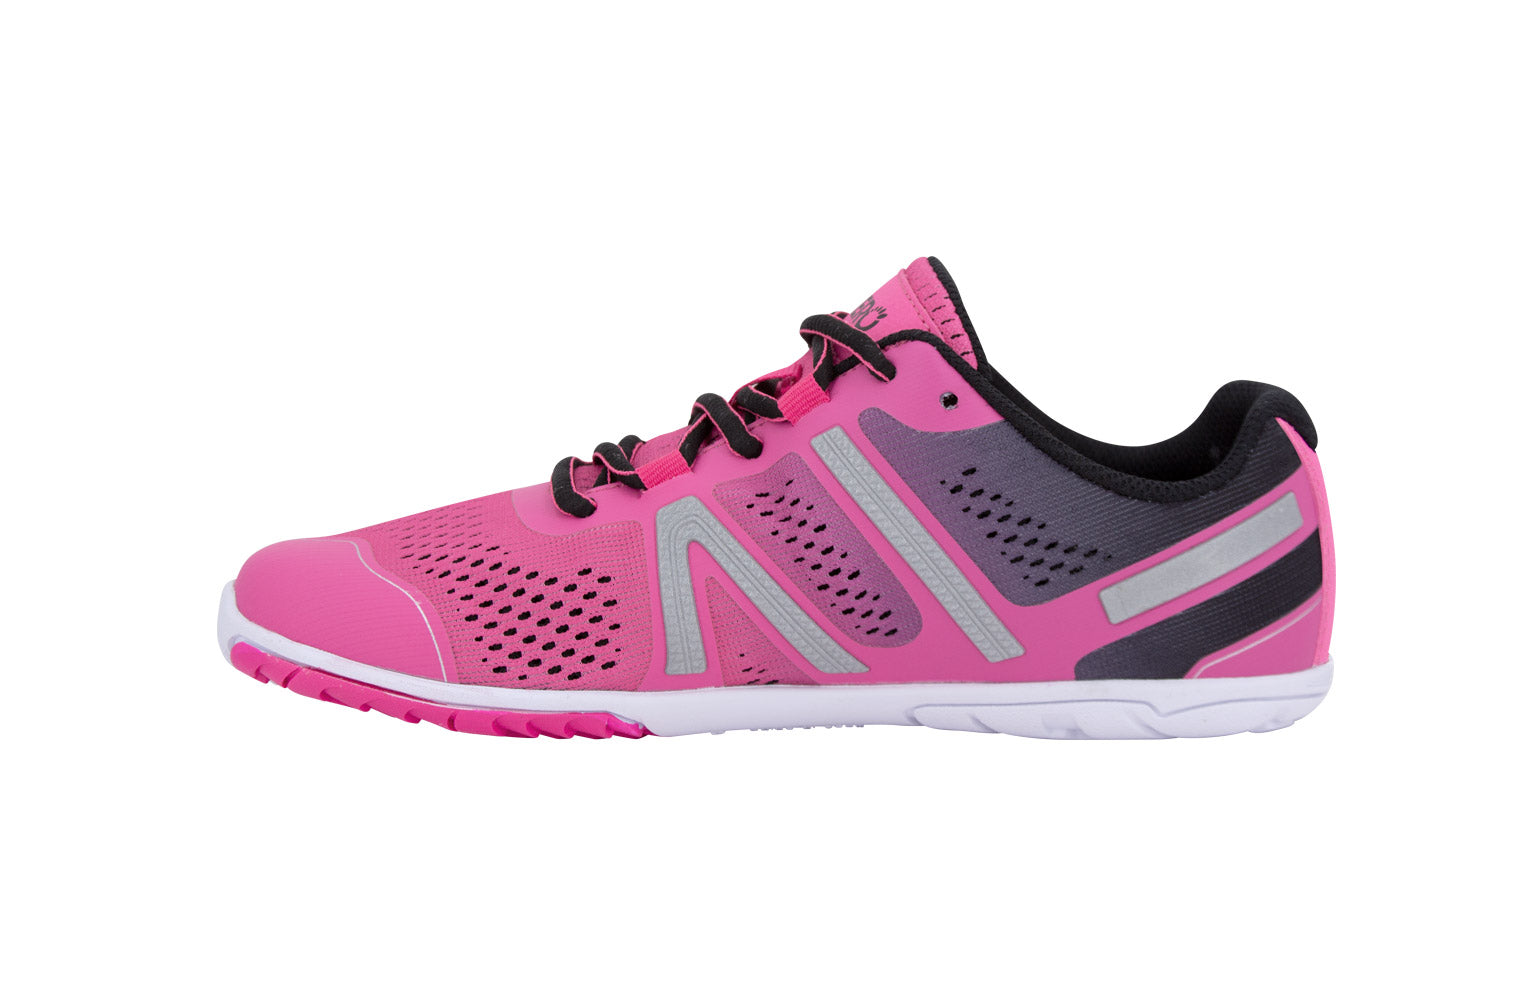 Xero Shoes HFS Womens barfods træningssko/løbesko til kvinder i farven pink glow, inderside